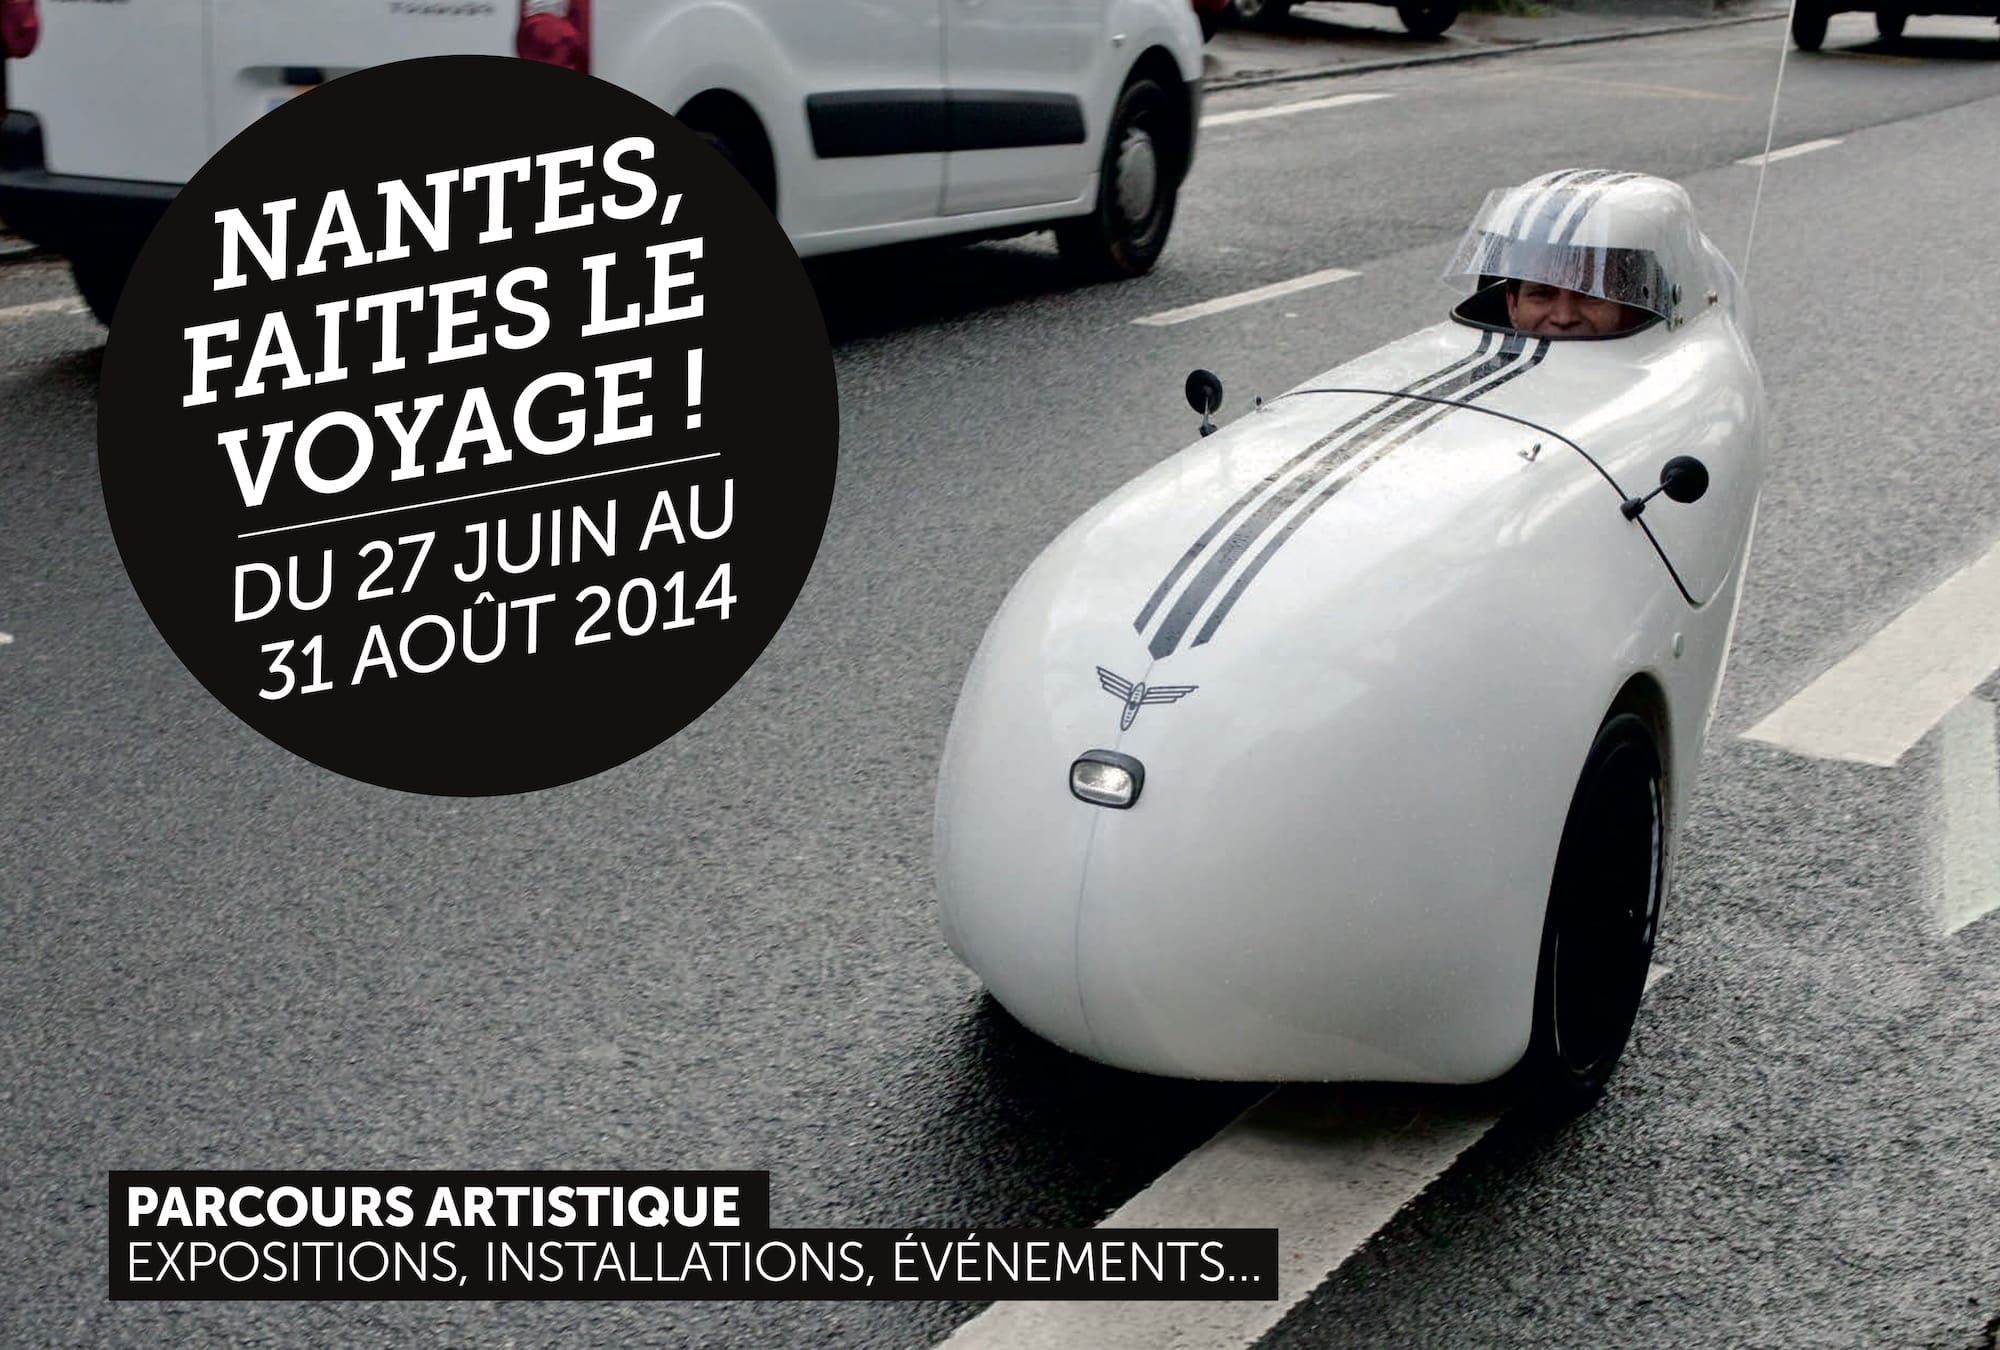 Visuel de l'édition 2014, Le Voyage à Nantes